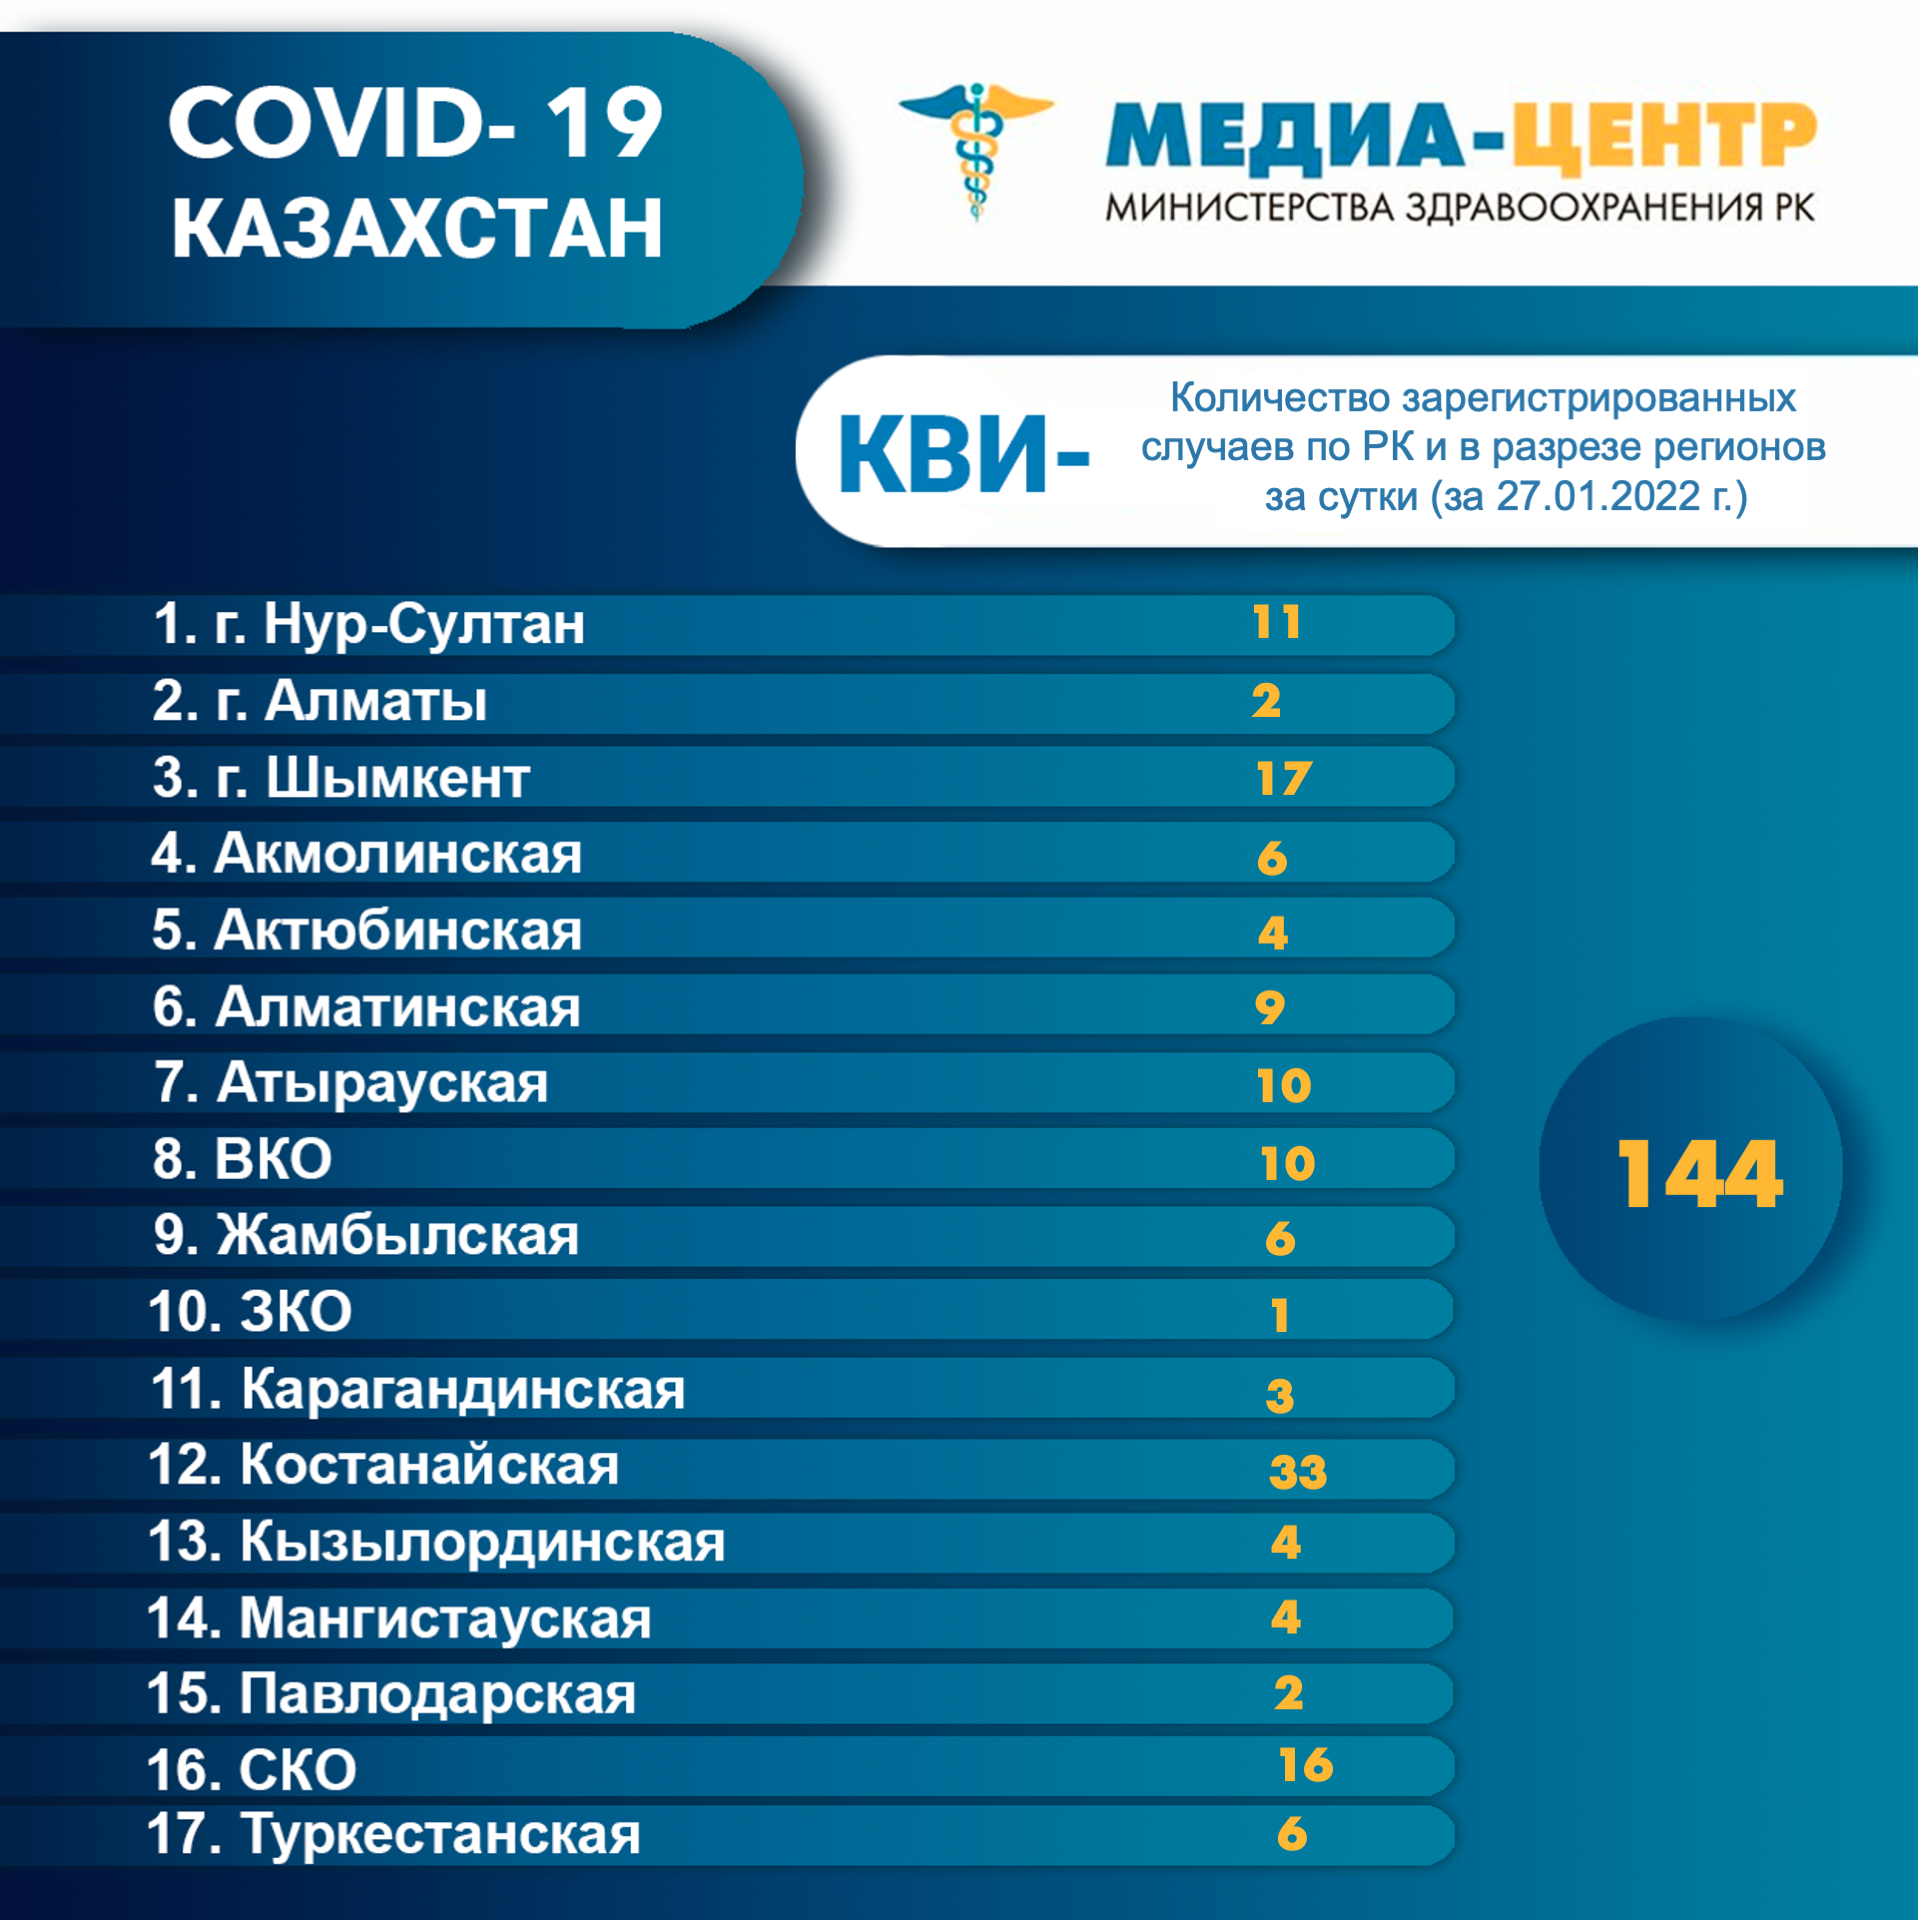 Количество зарегистрированных случаев КВИ- по РК и в разрезе регионов за сутки (27.01.2022 г.)